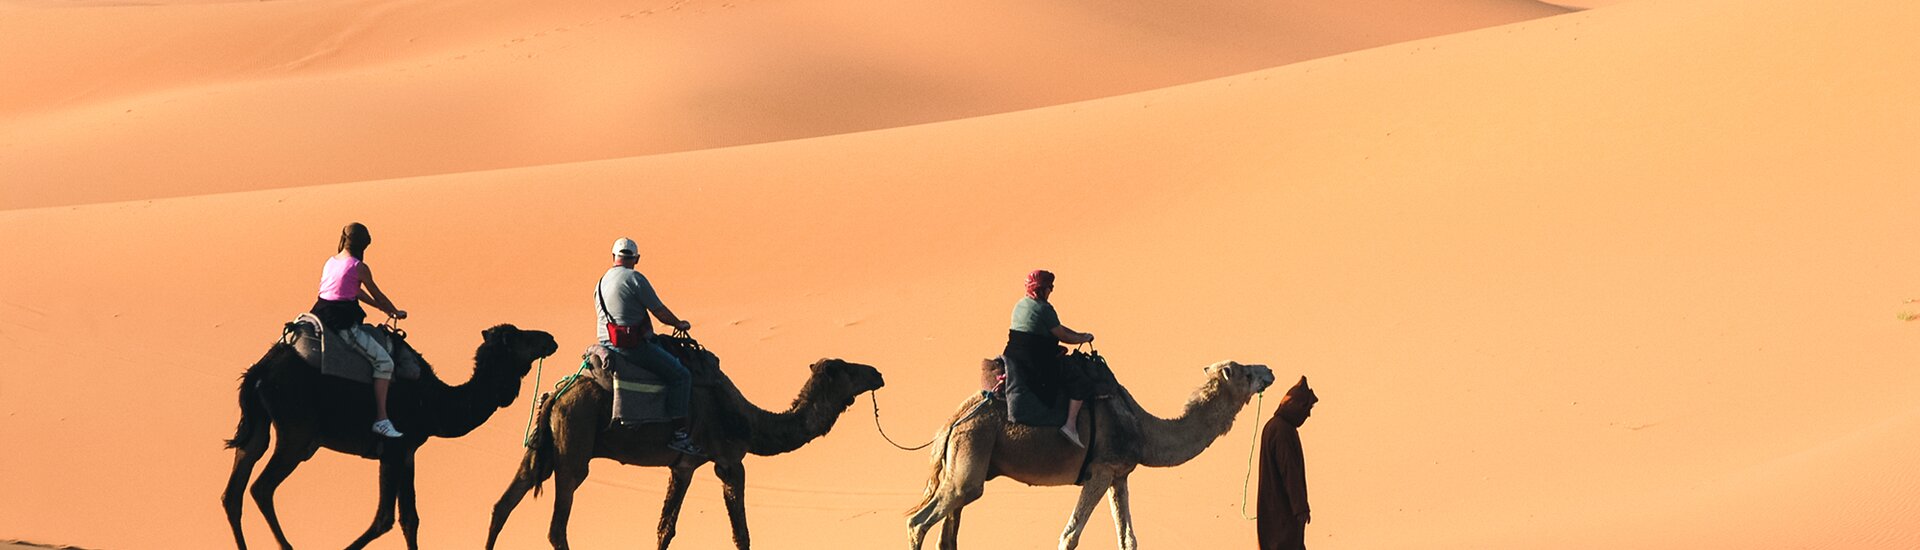 Kamelreiten in der Wüste Marokkos